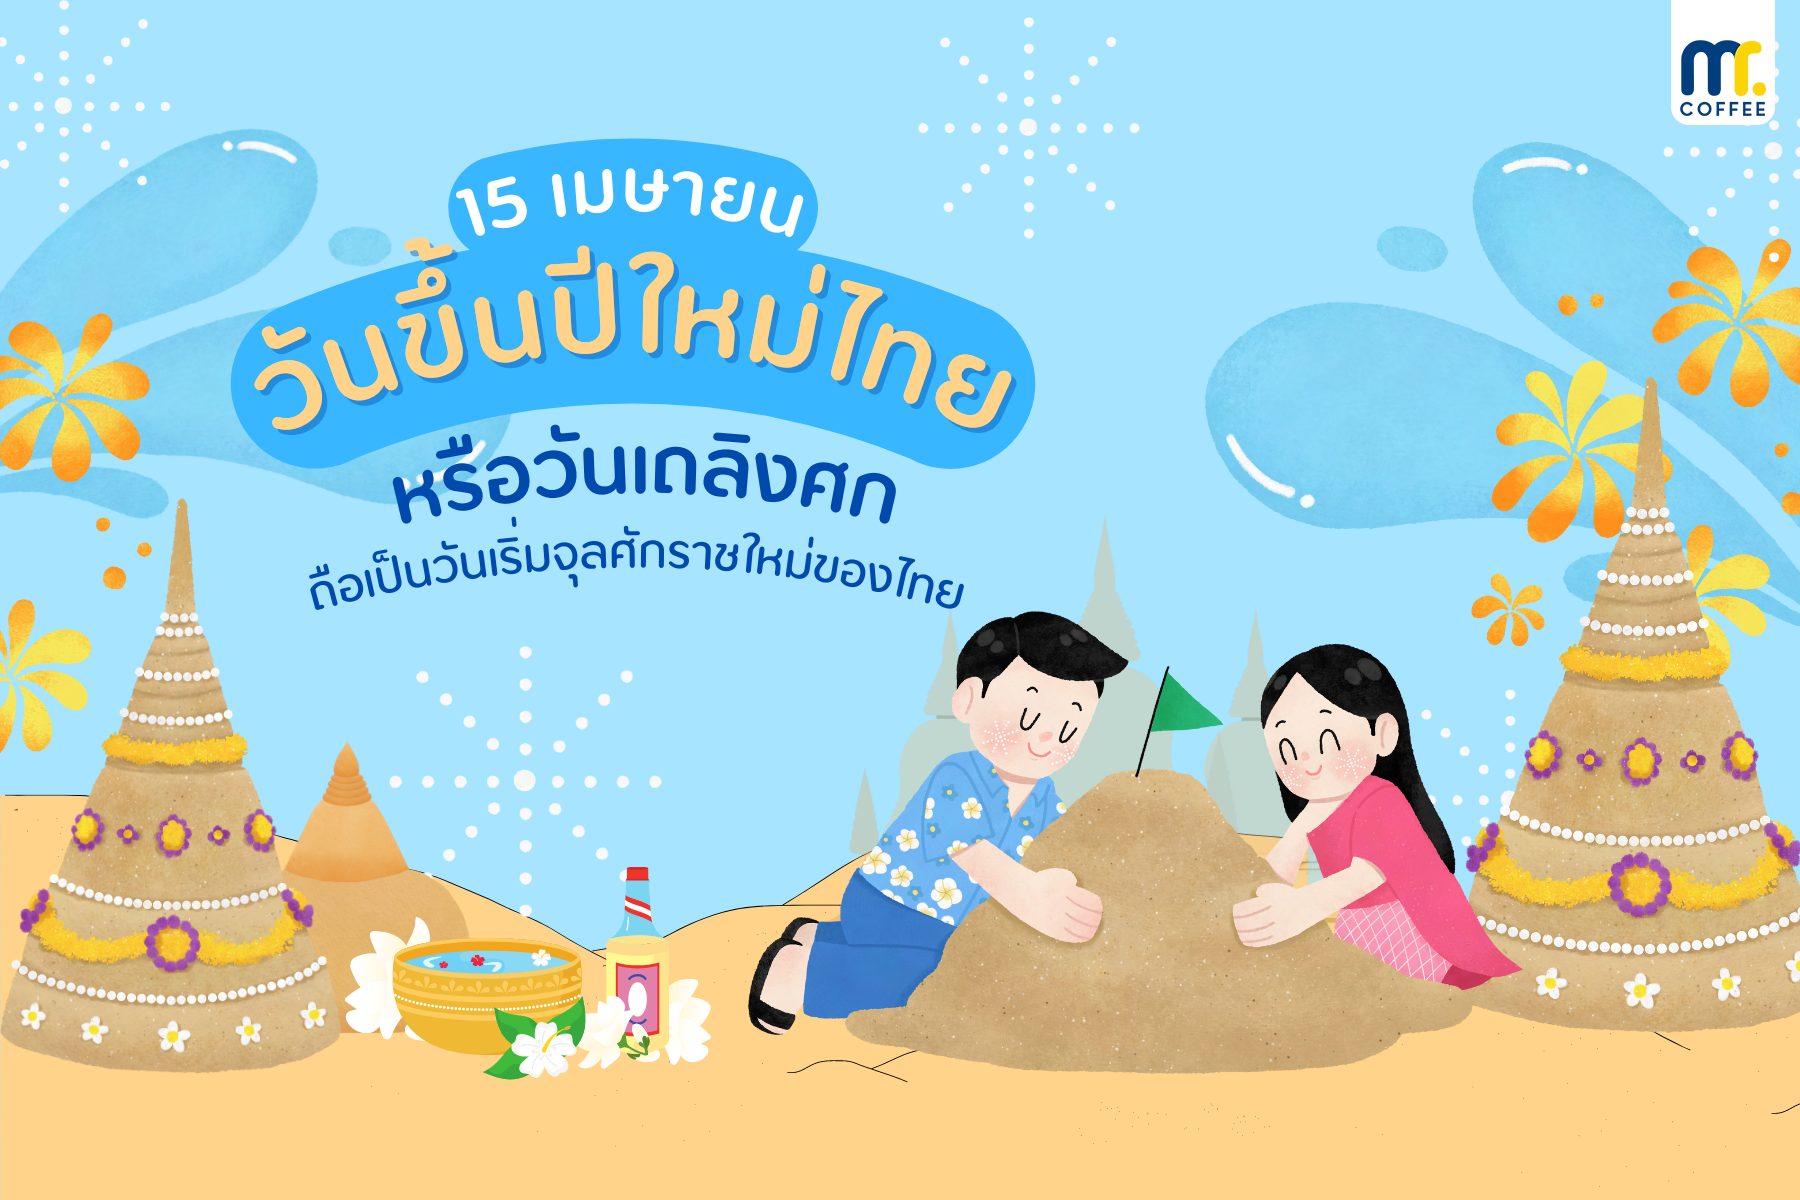 วันที่ 15 เมษายน วันขึ้นปีใหม่ไทย หรือ “วันเถลิงศก” 